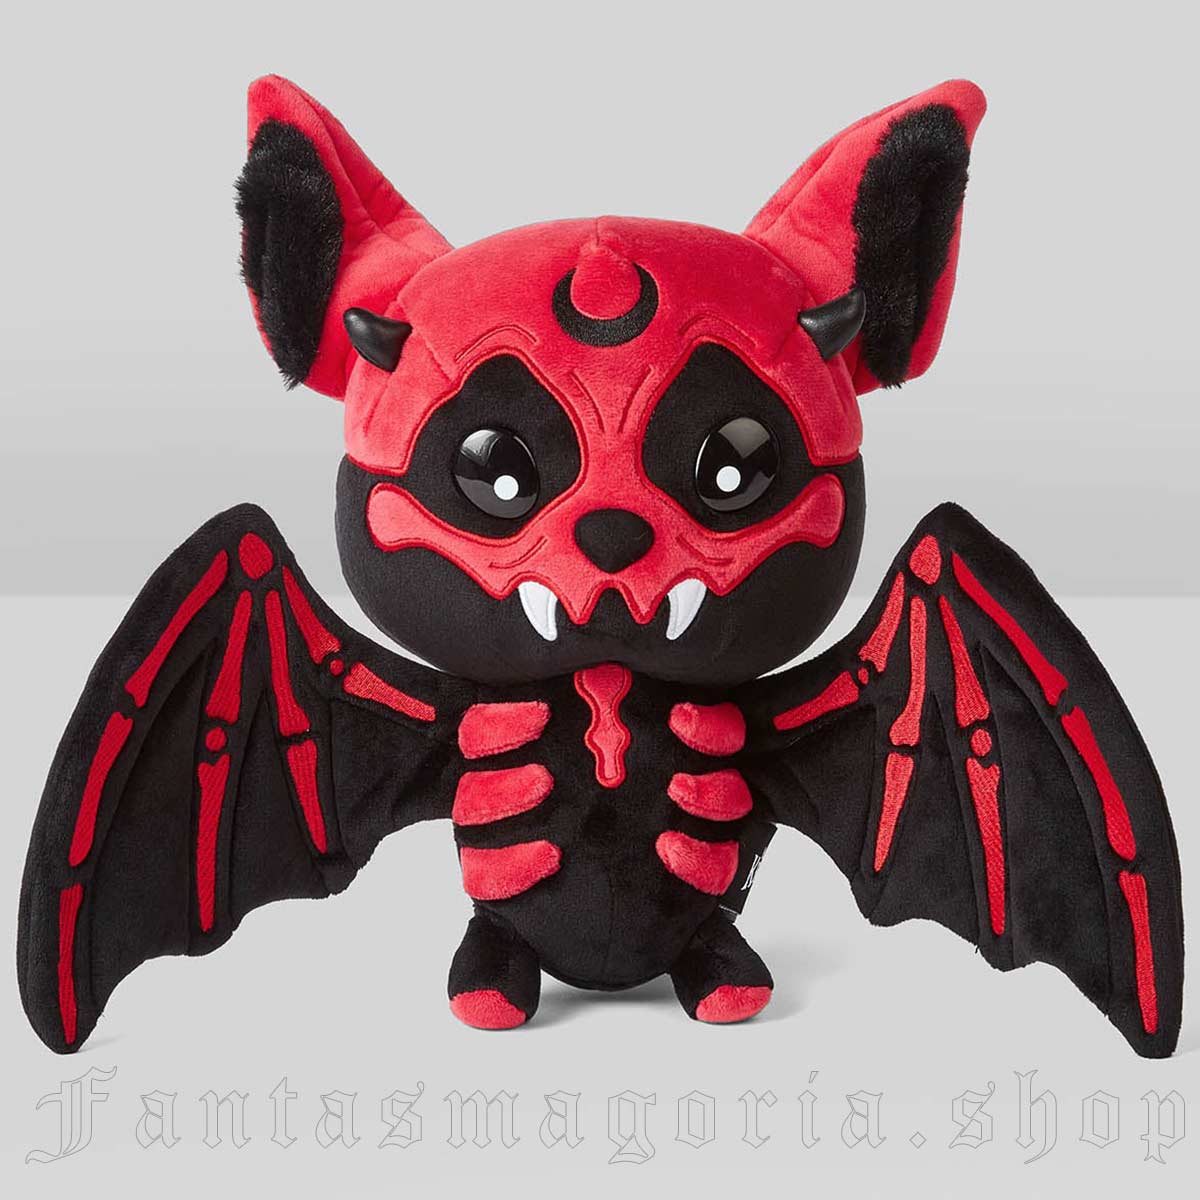 Vampir Batblood Plush Toy